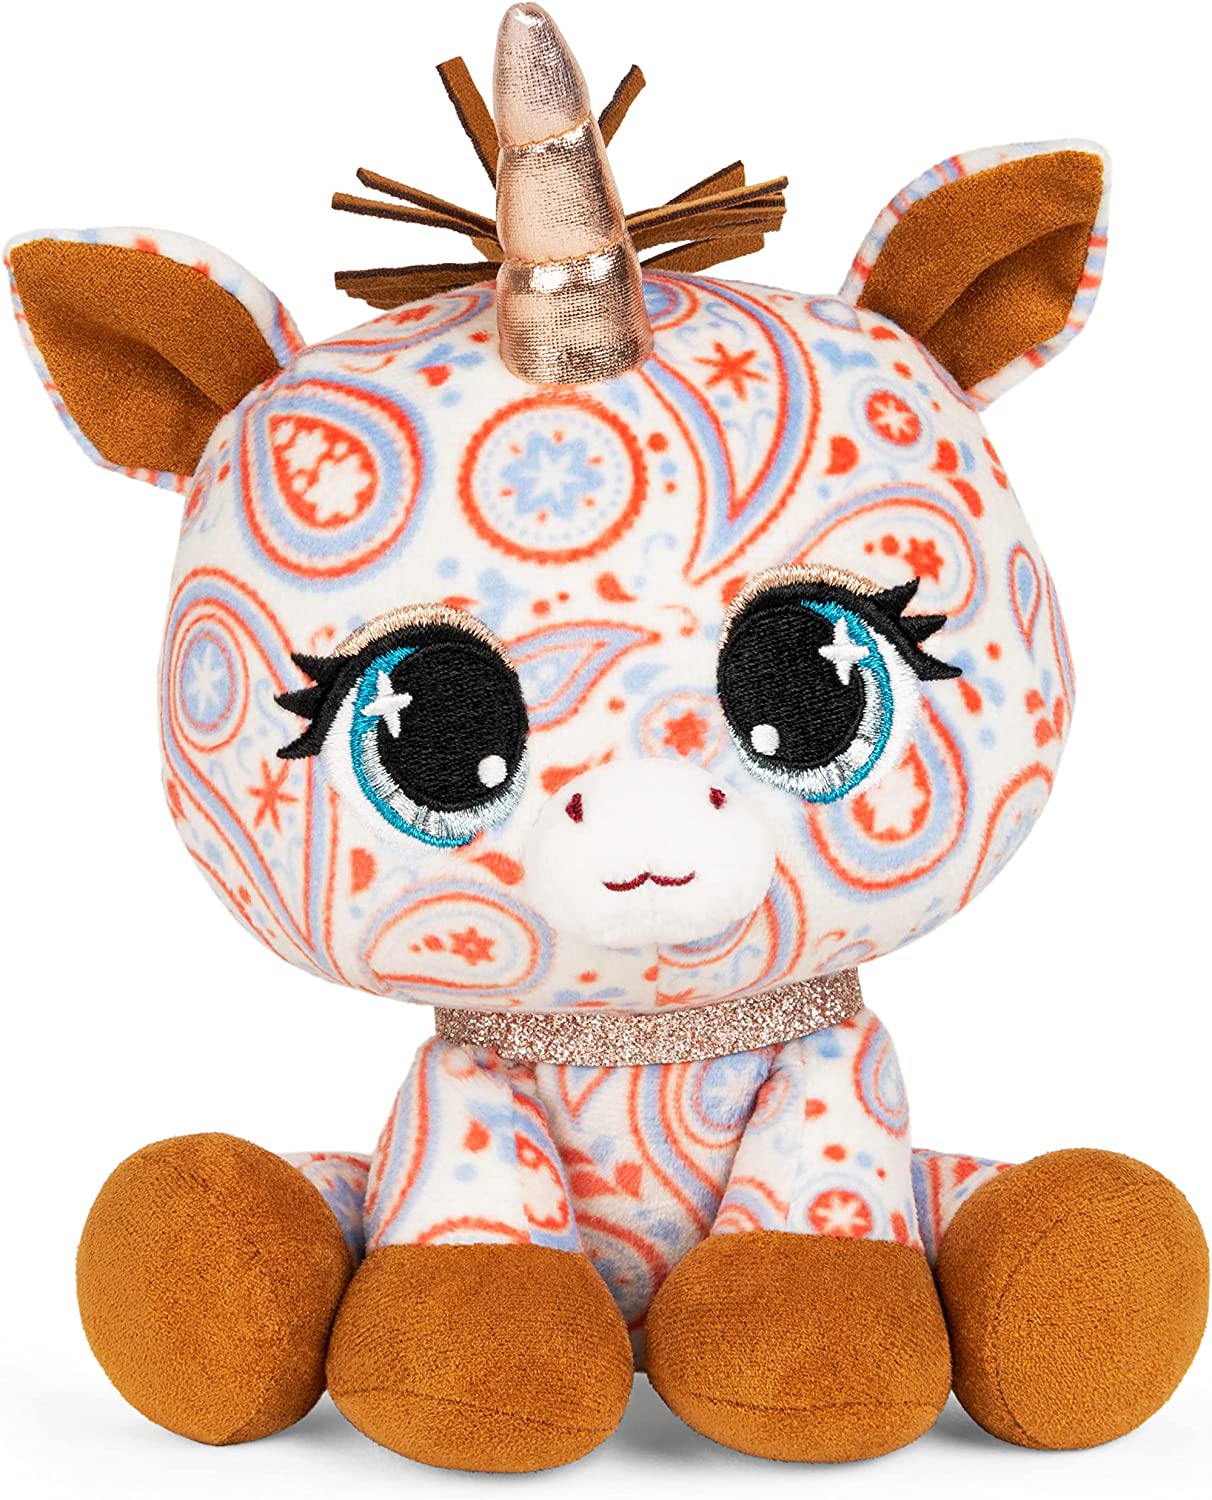 GUND P.Lushes Sally Mustang Unicorn Premium Stuffed Animal Soft Plush Paisley 6 Inch